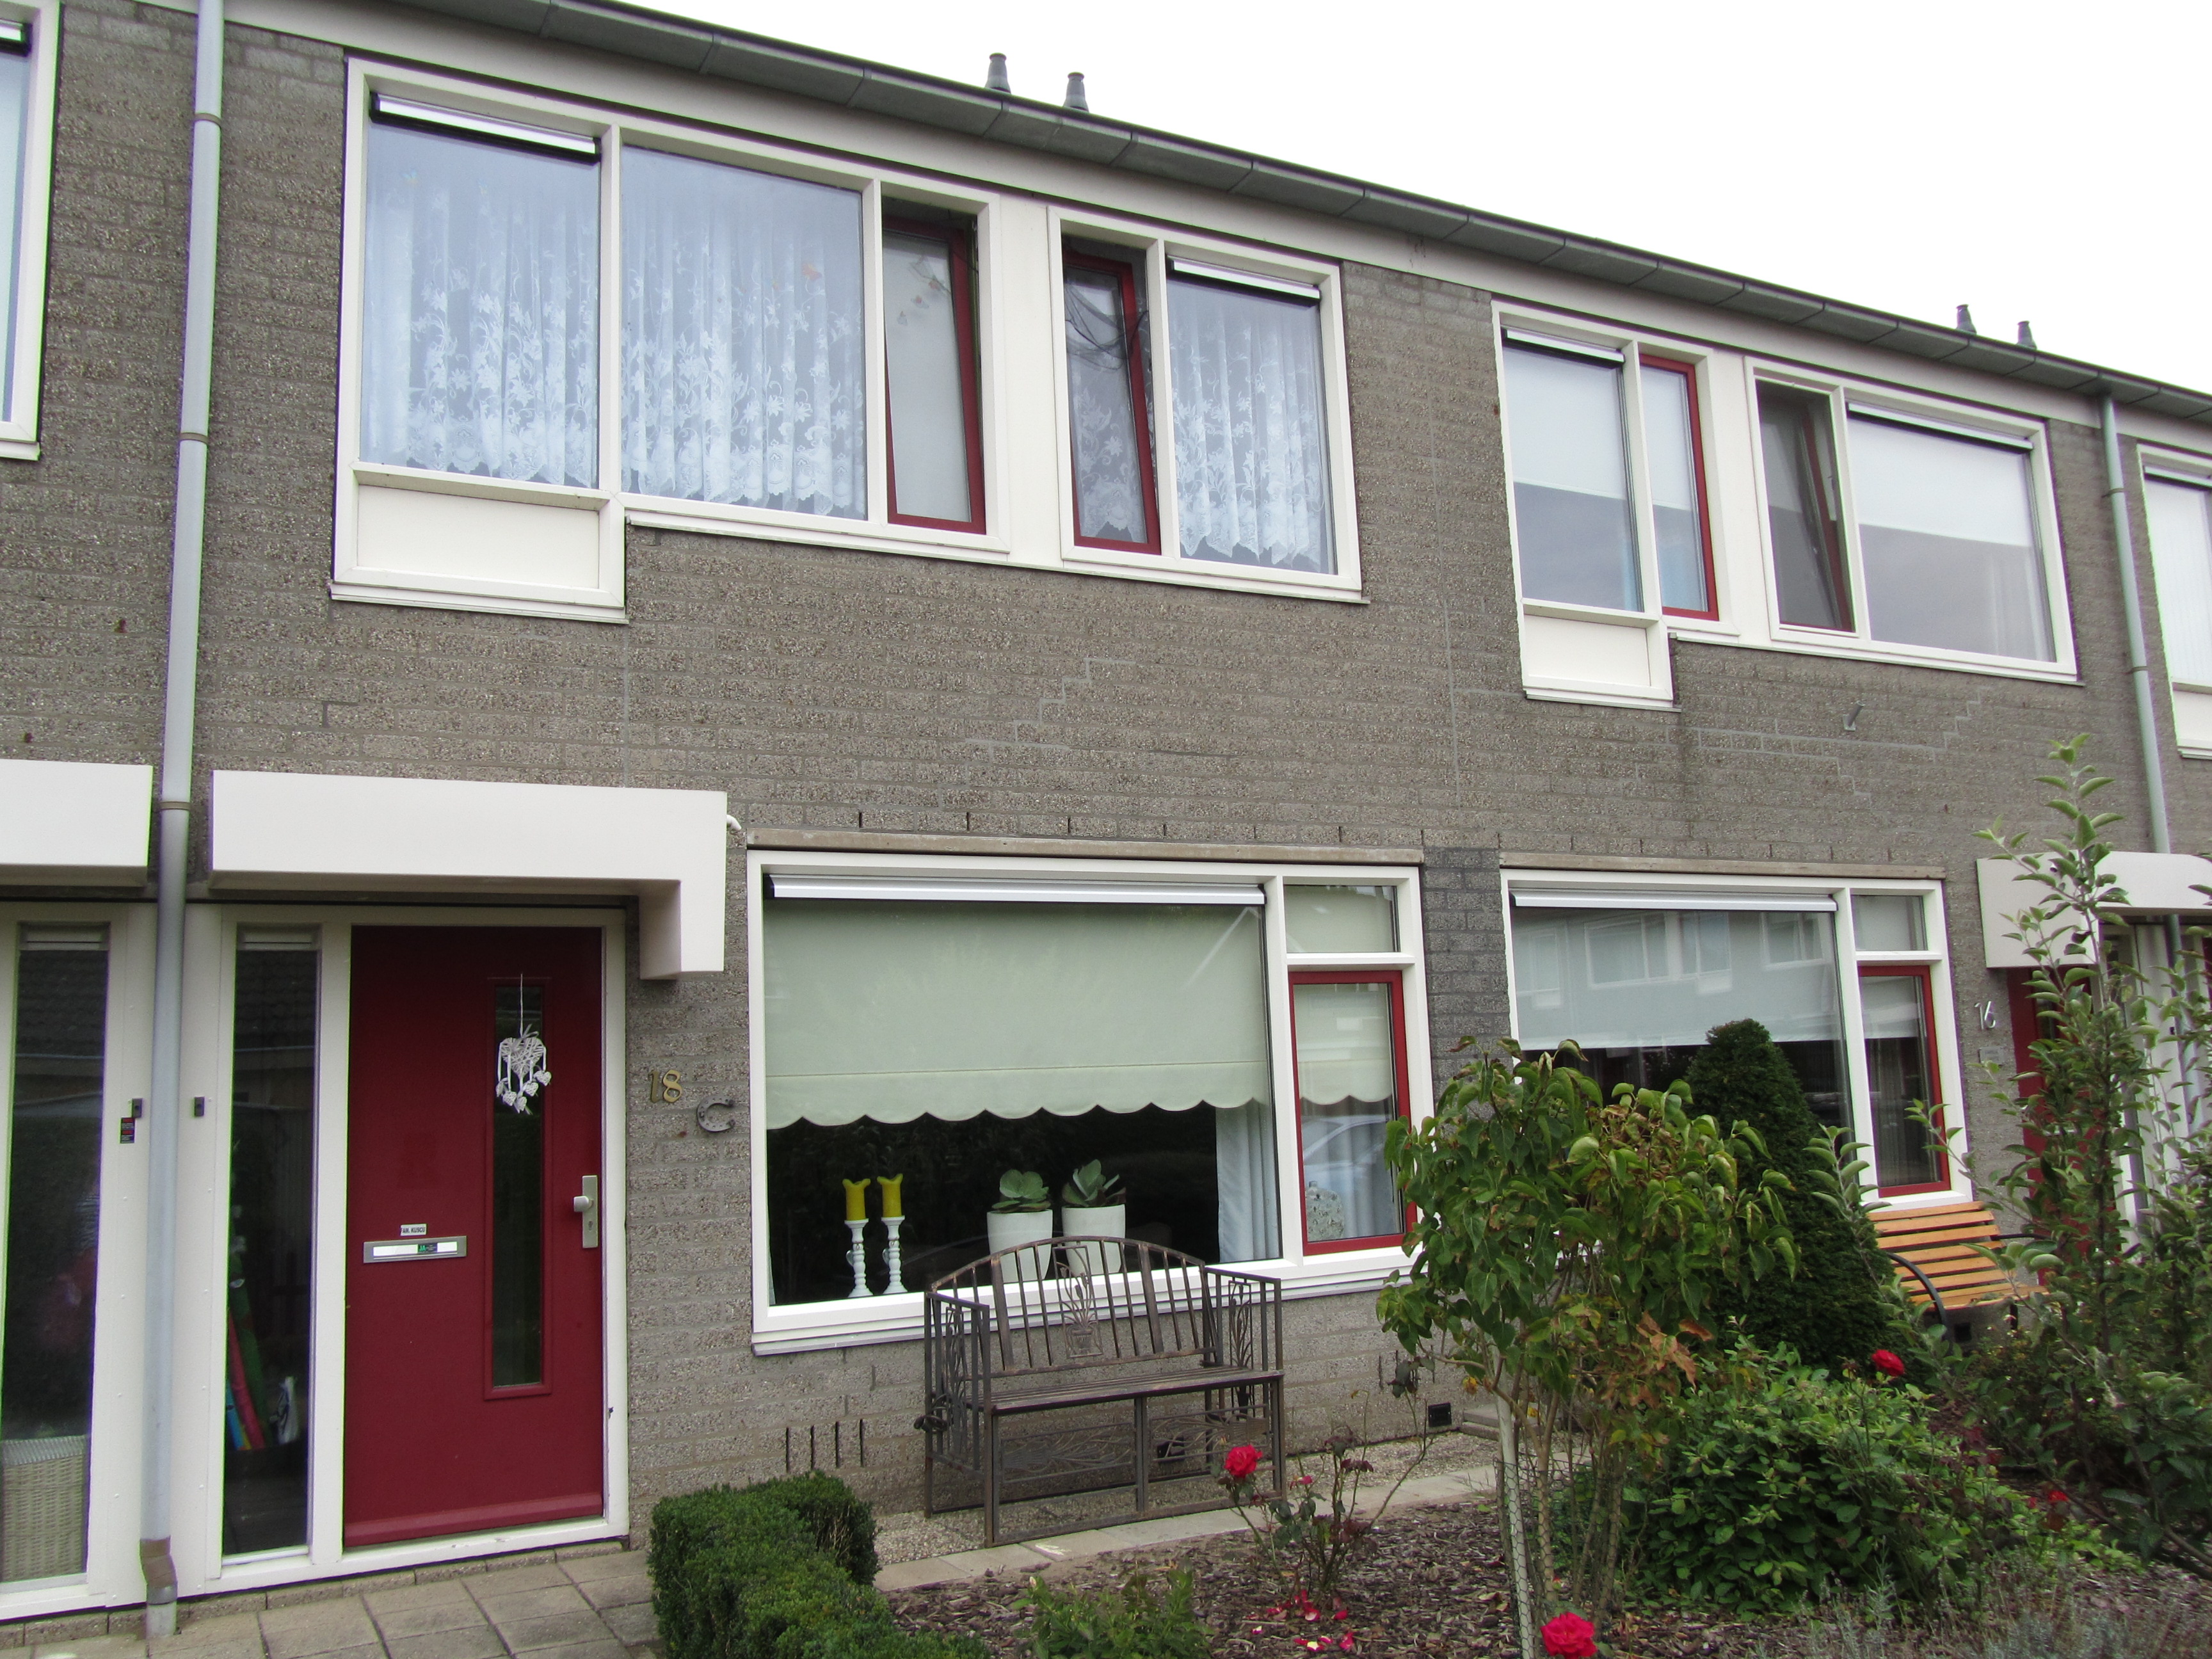 Kwartelstraat 18, 7161 JS Neede, Nederland